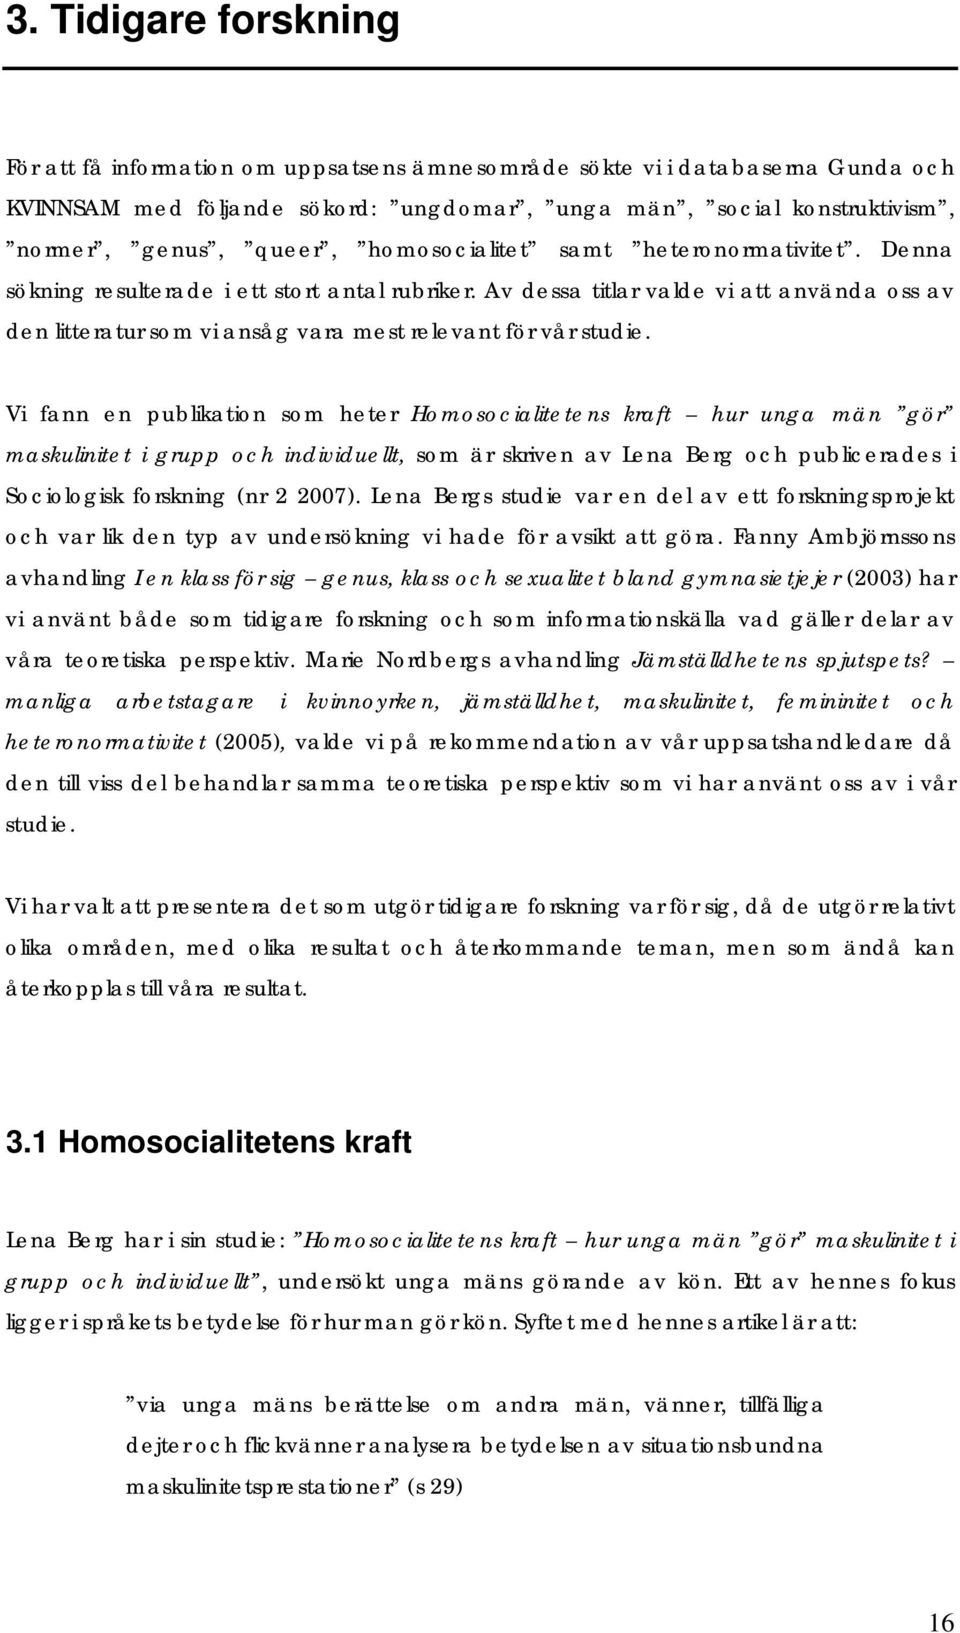 Vi fann en publikation som heter Homosocialitetens kraft hur unga män gör maskulinitet i grupp och individuellt, som är skriven av Lena Berg och publicerades i Sociologisk forskning (nr 2 2007).